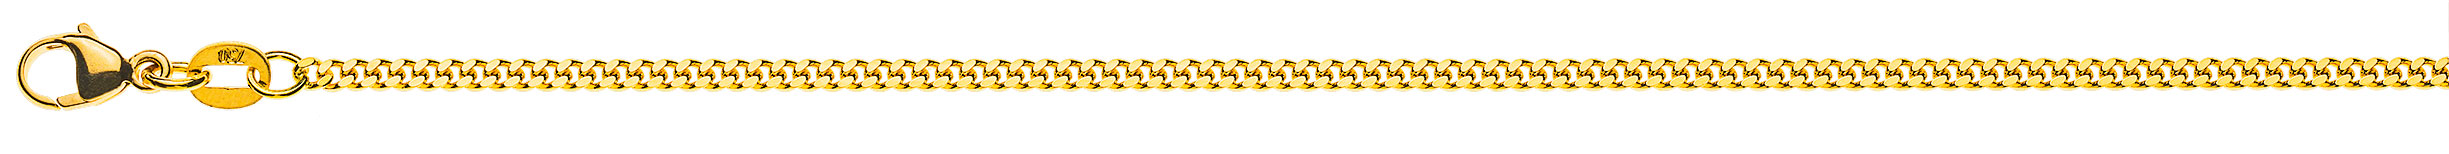 AURONOS Prestige Halskette Gelbgold 18K Panzerkette geschliffen 50cm 2.0mm